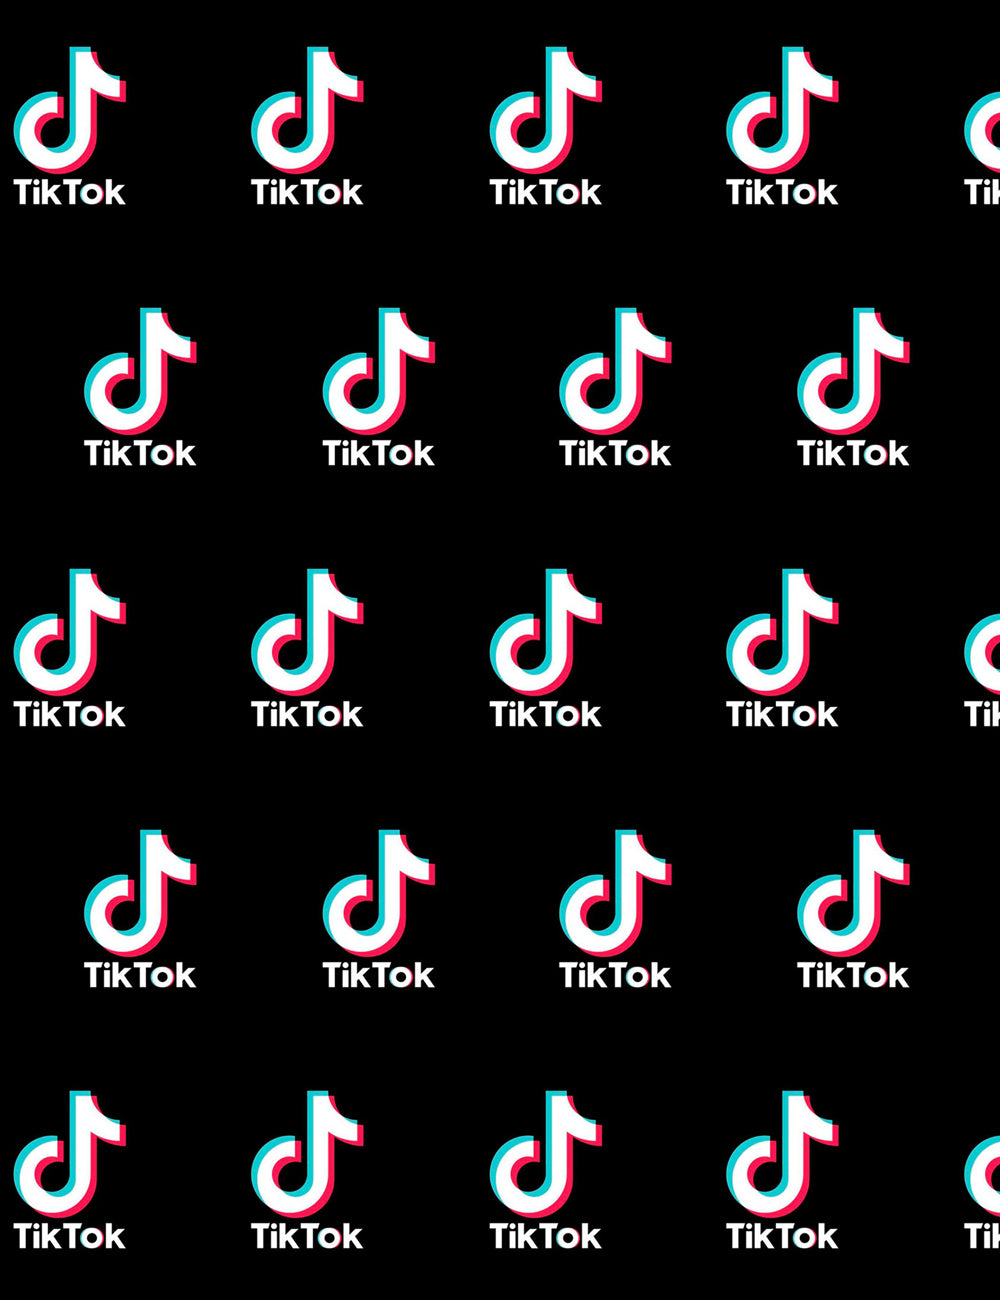 Tiktok Logo Repeat Backdrop IBD-24616